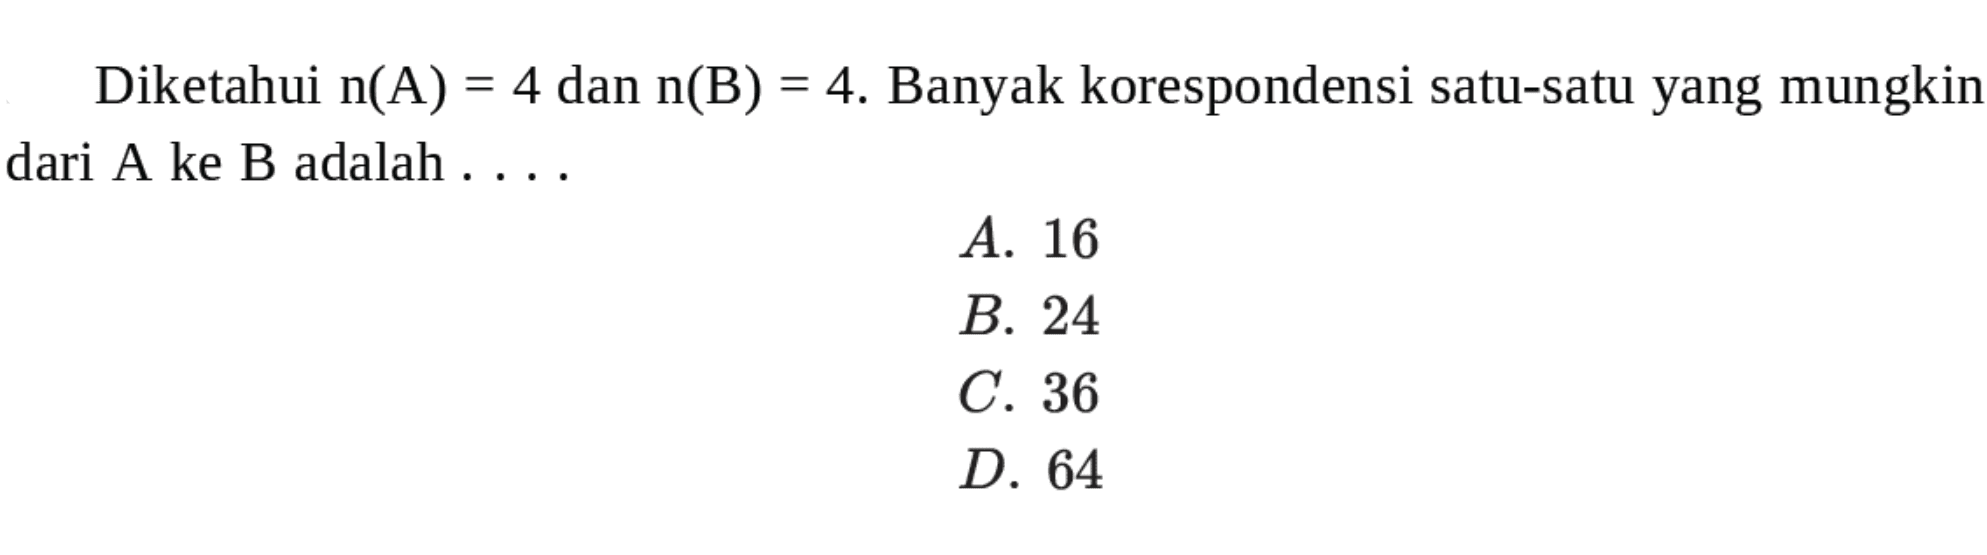 Diketahui n(A) = 4 dan n(B) = 4. Banyak korespondensi satu-satu yang mungkin dari A ke B adalah.... A. 16 B. 24 C. 36 D. 64